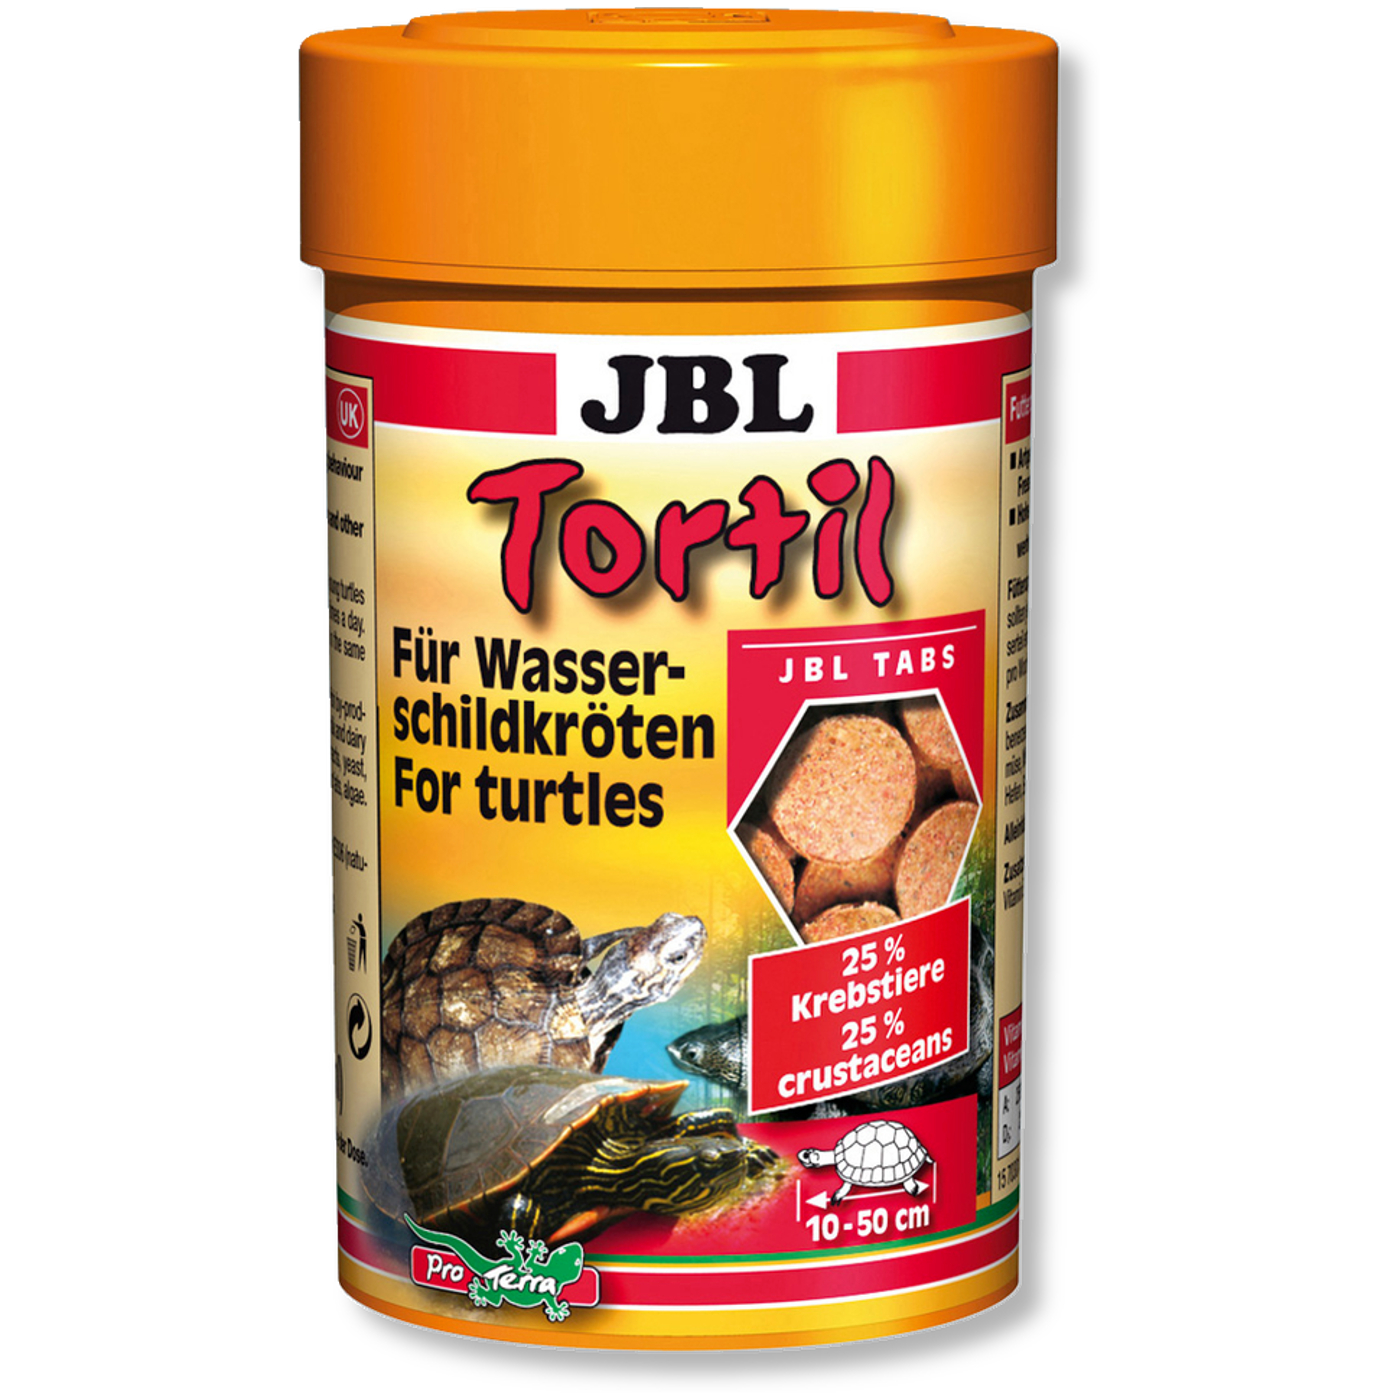 JBL Tortil Futtertabletten für Wasserschildkröten 100 ml 